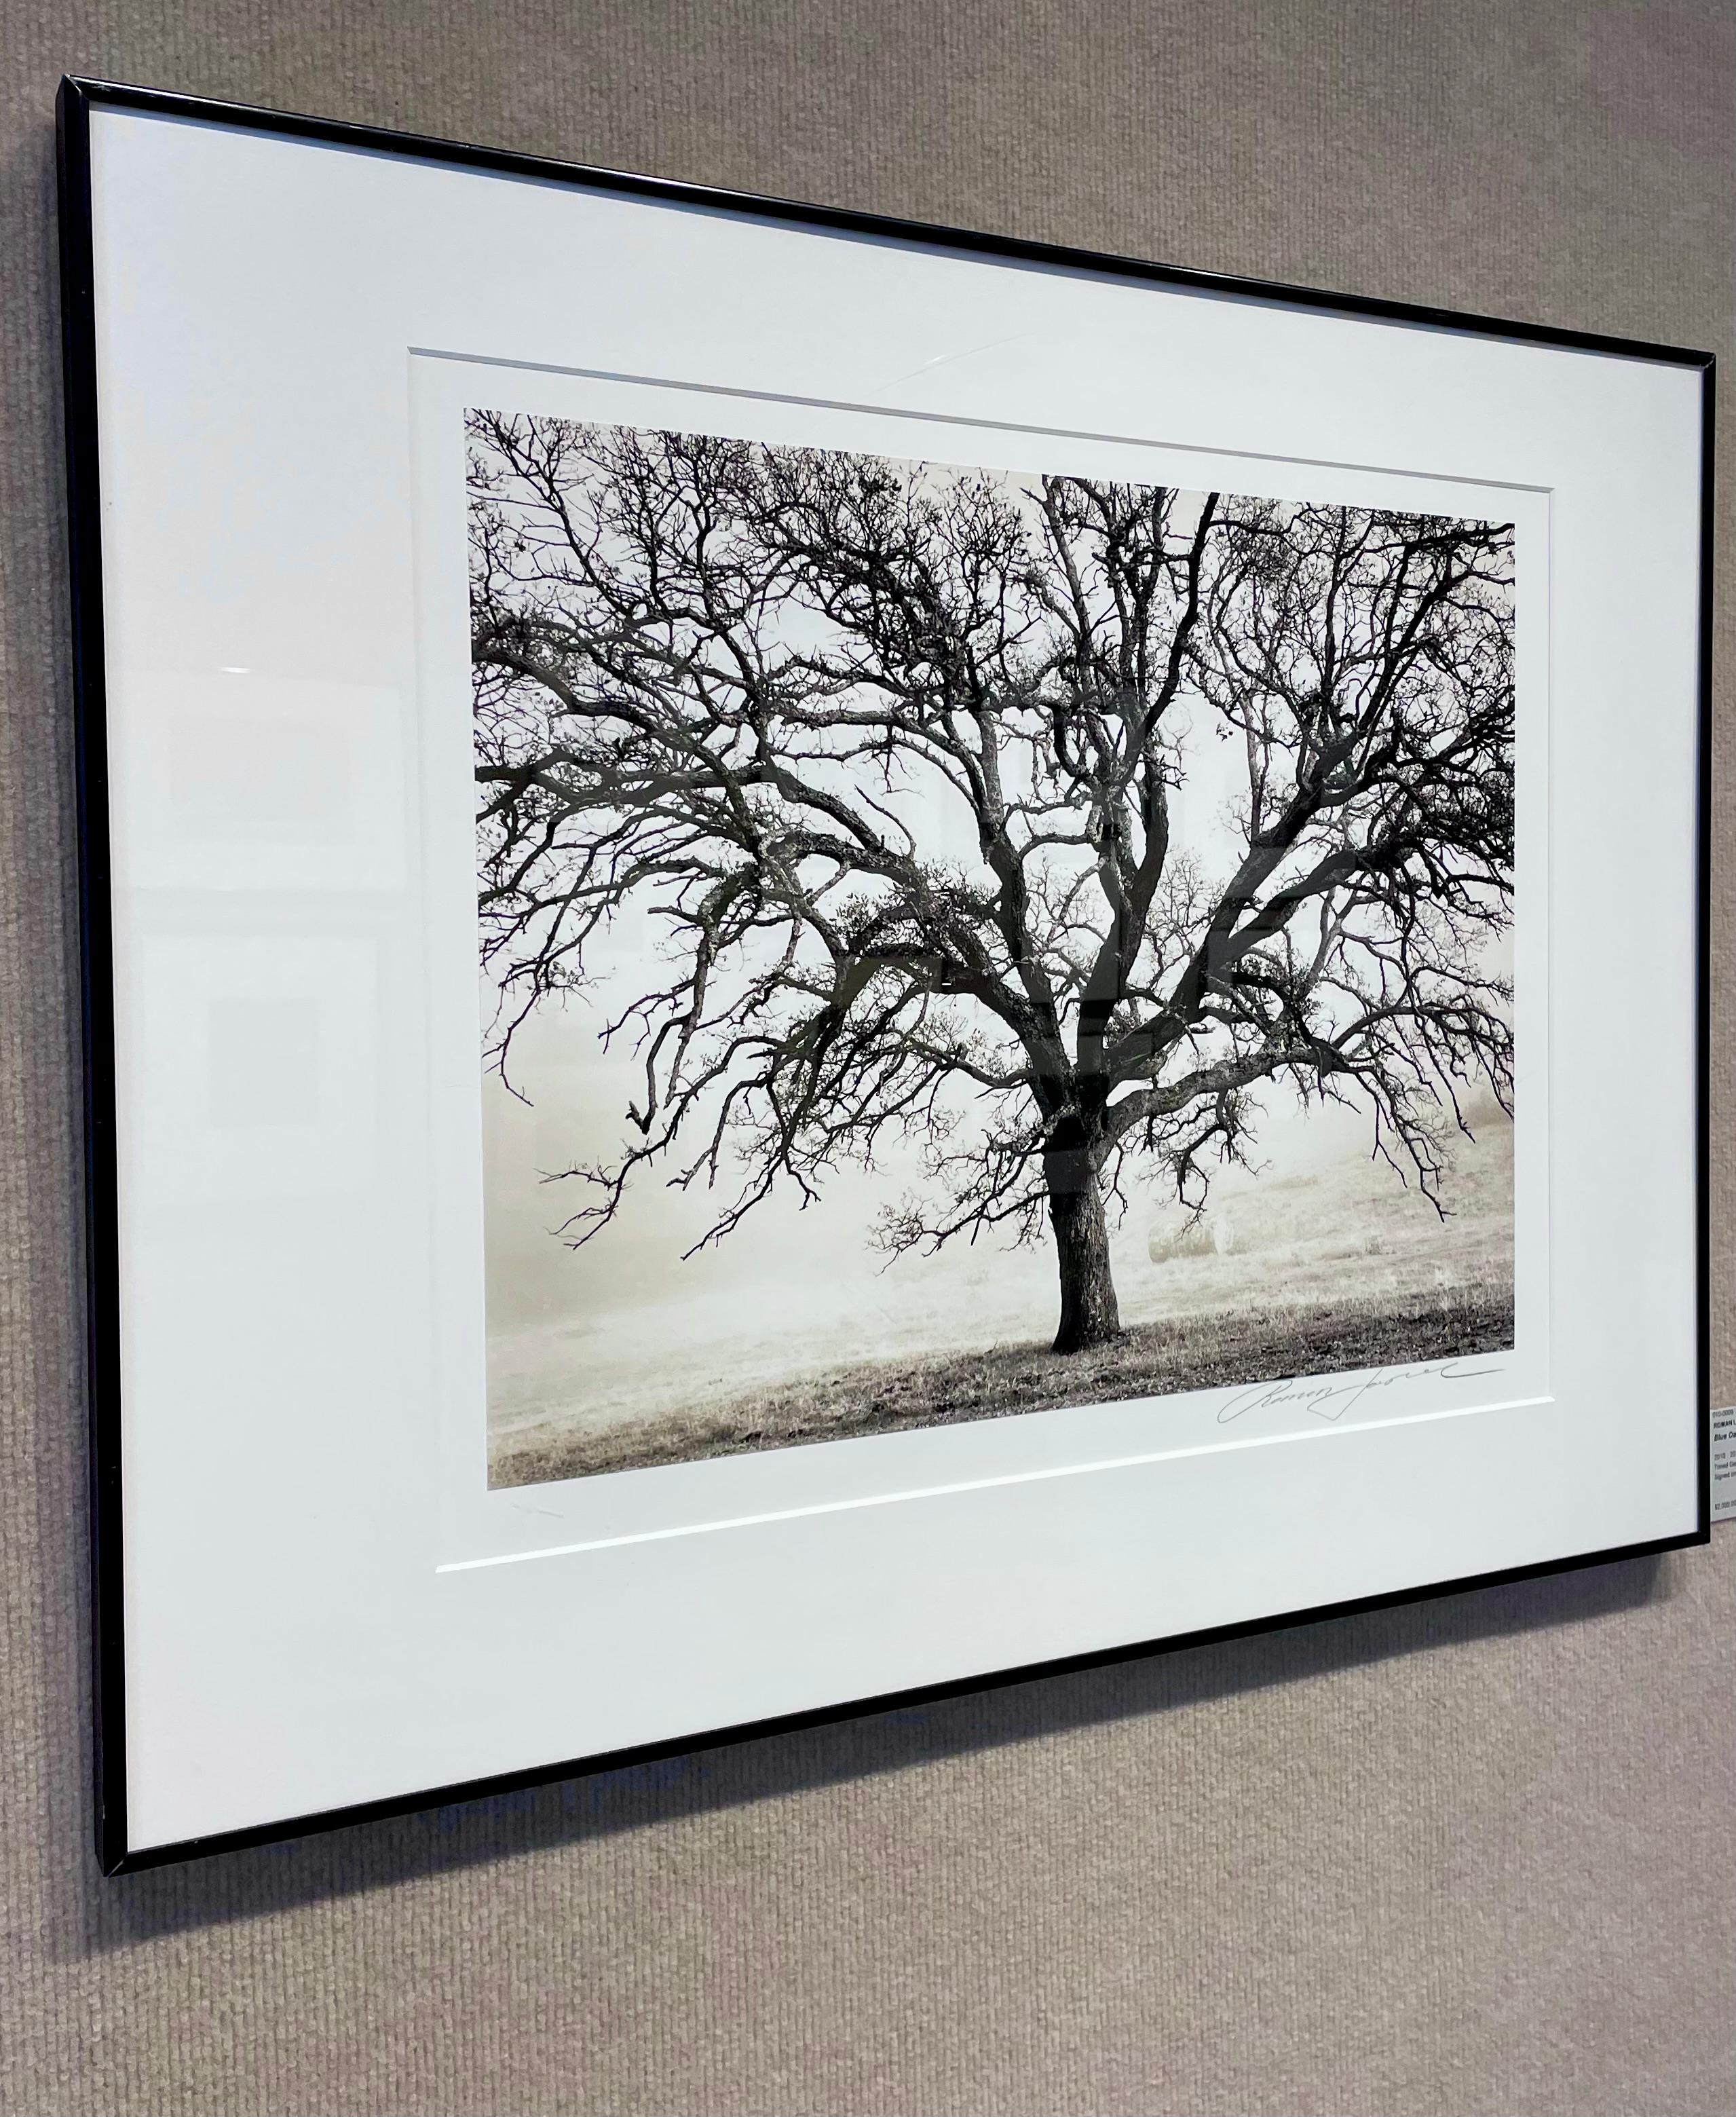 Blue Oak, Black Butte - Gray Black and White Photograph by Roman Loranc